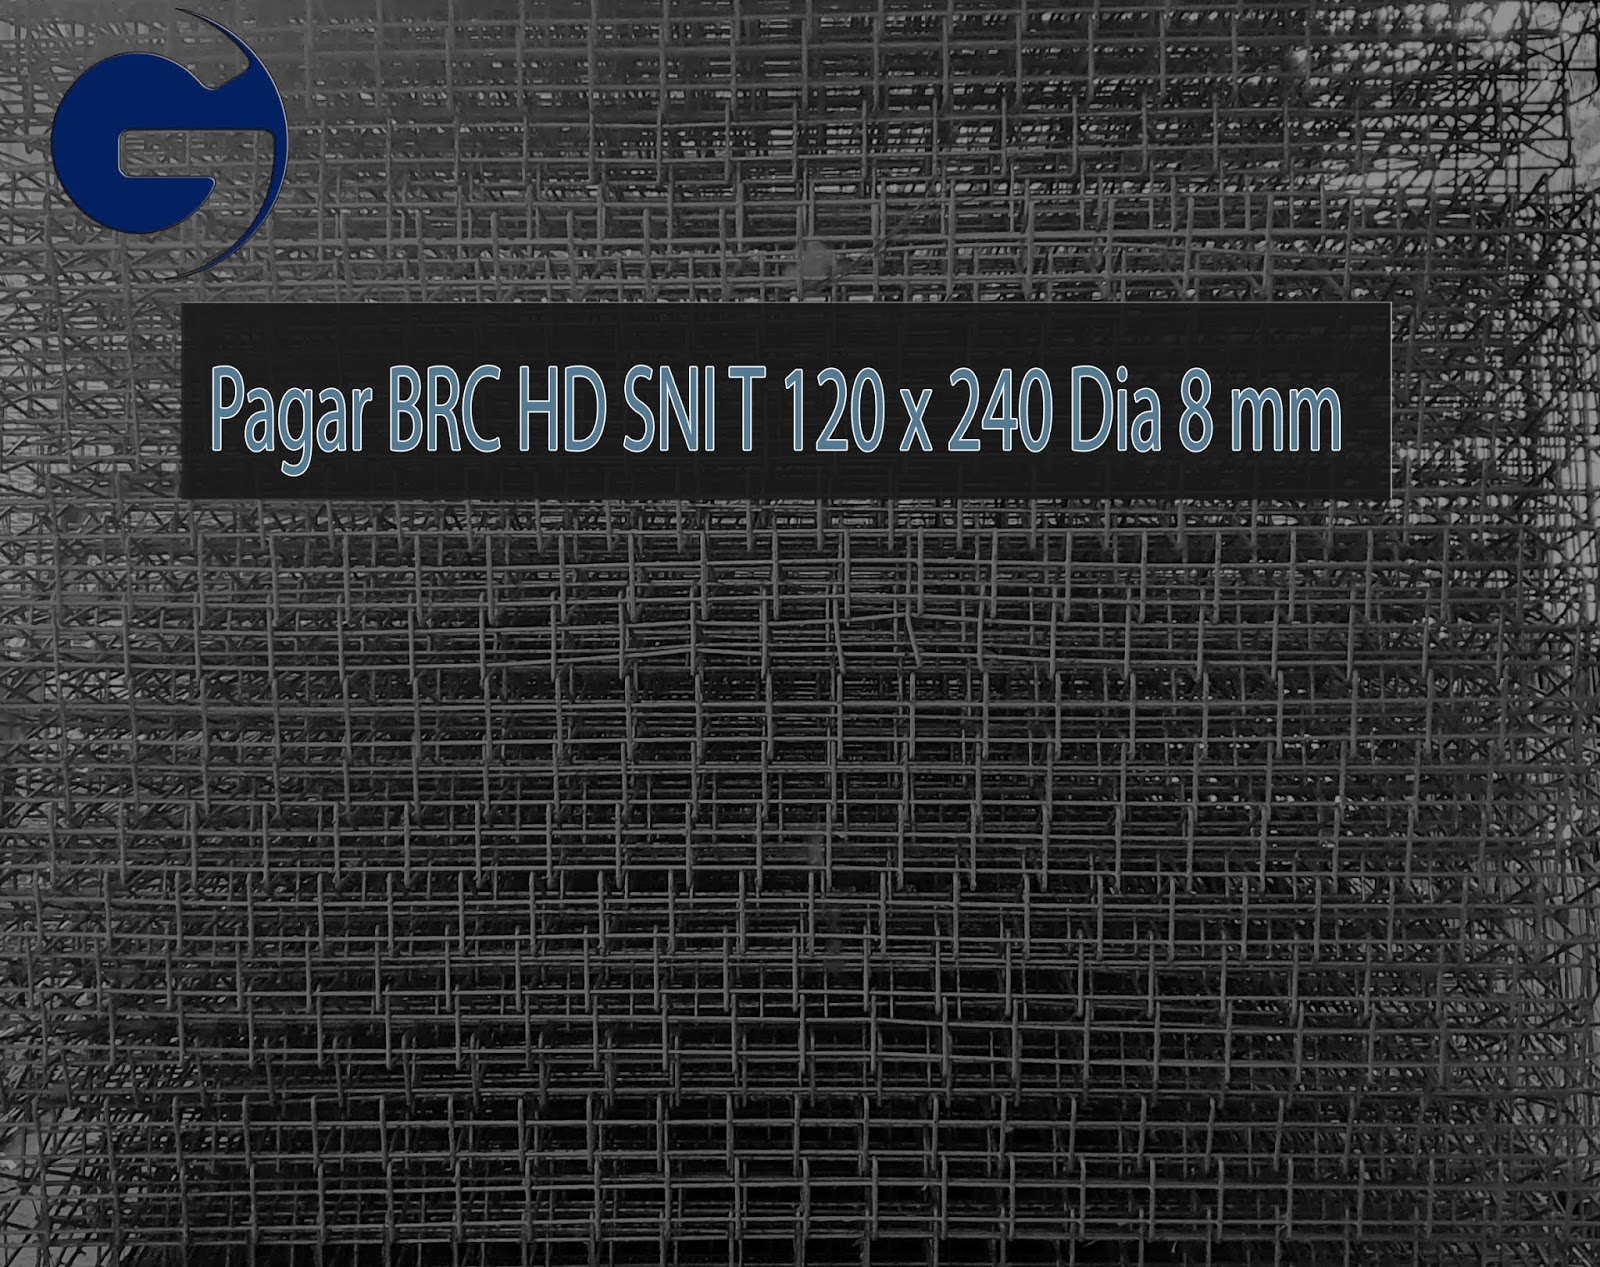 Jual pagar BRC HD SNI T 120 x 240 Dia 8 mm